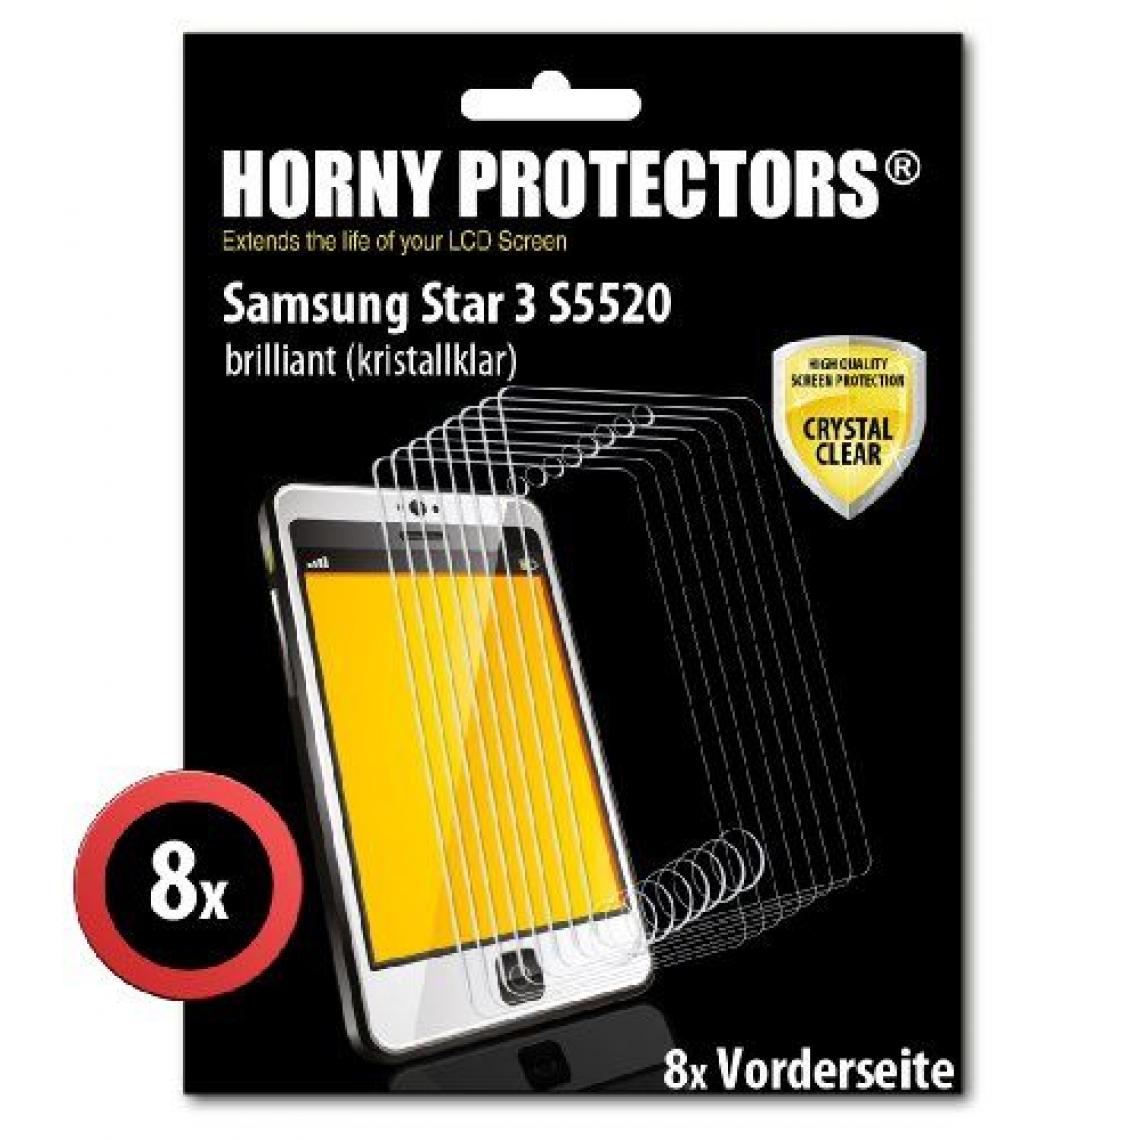 Inconnu - Horny Protectors 9402 Protecteur d'écran 'clair comme de l'eau roche' pour Samsung Star III S5520 - Coque, étui smartphone